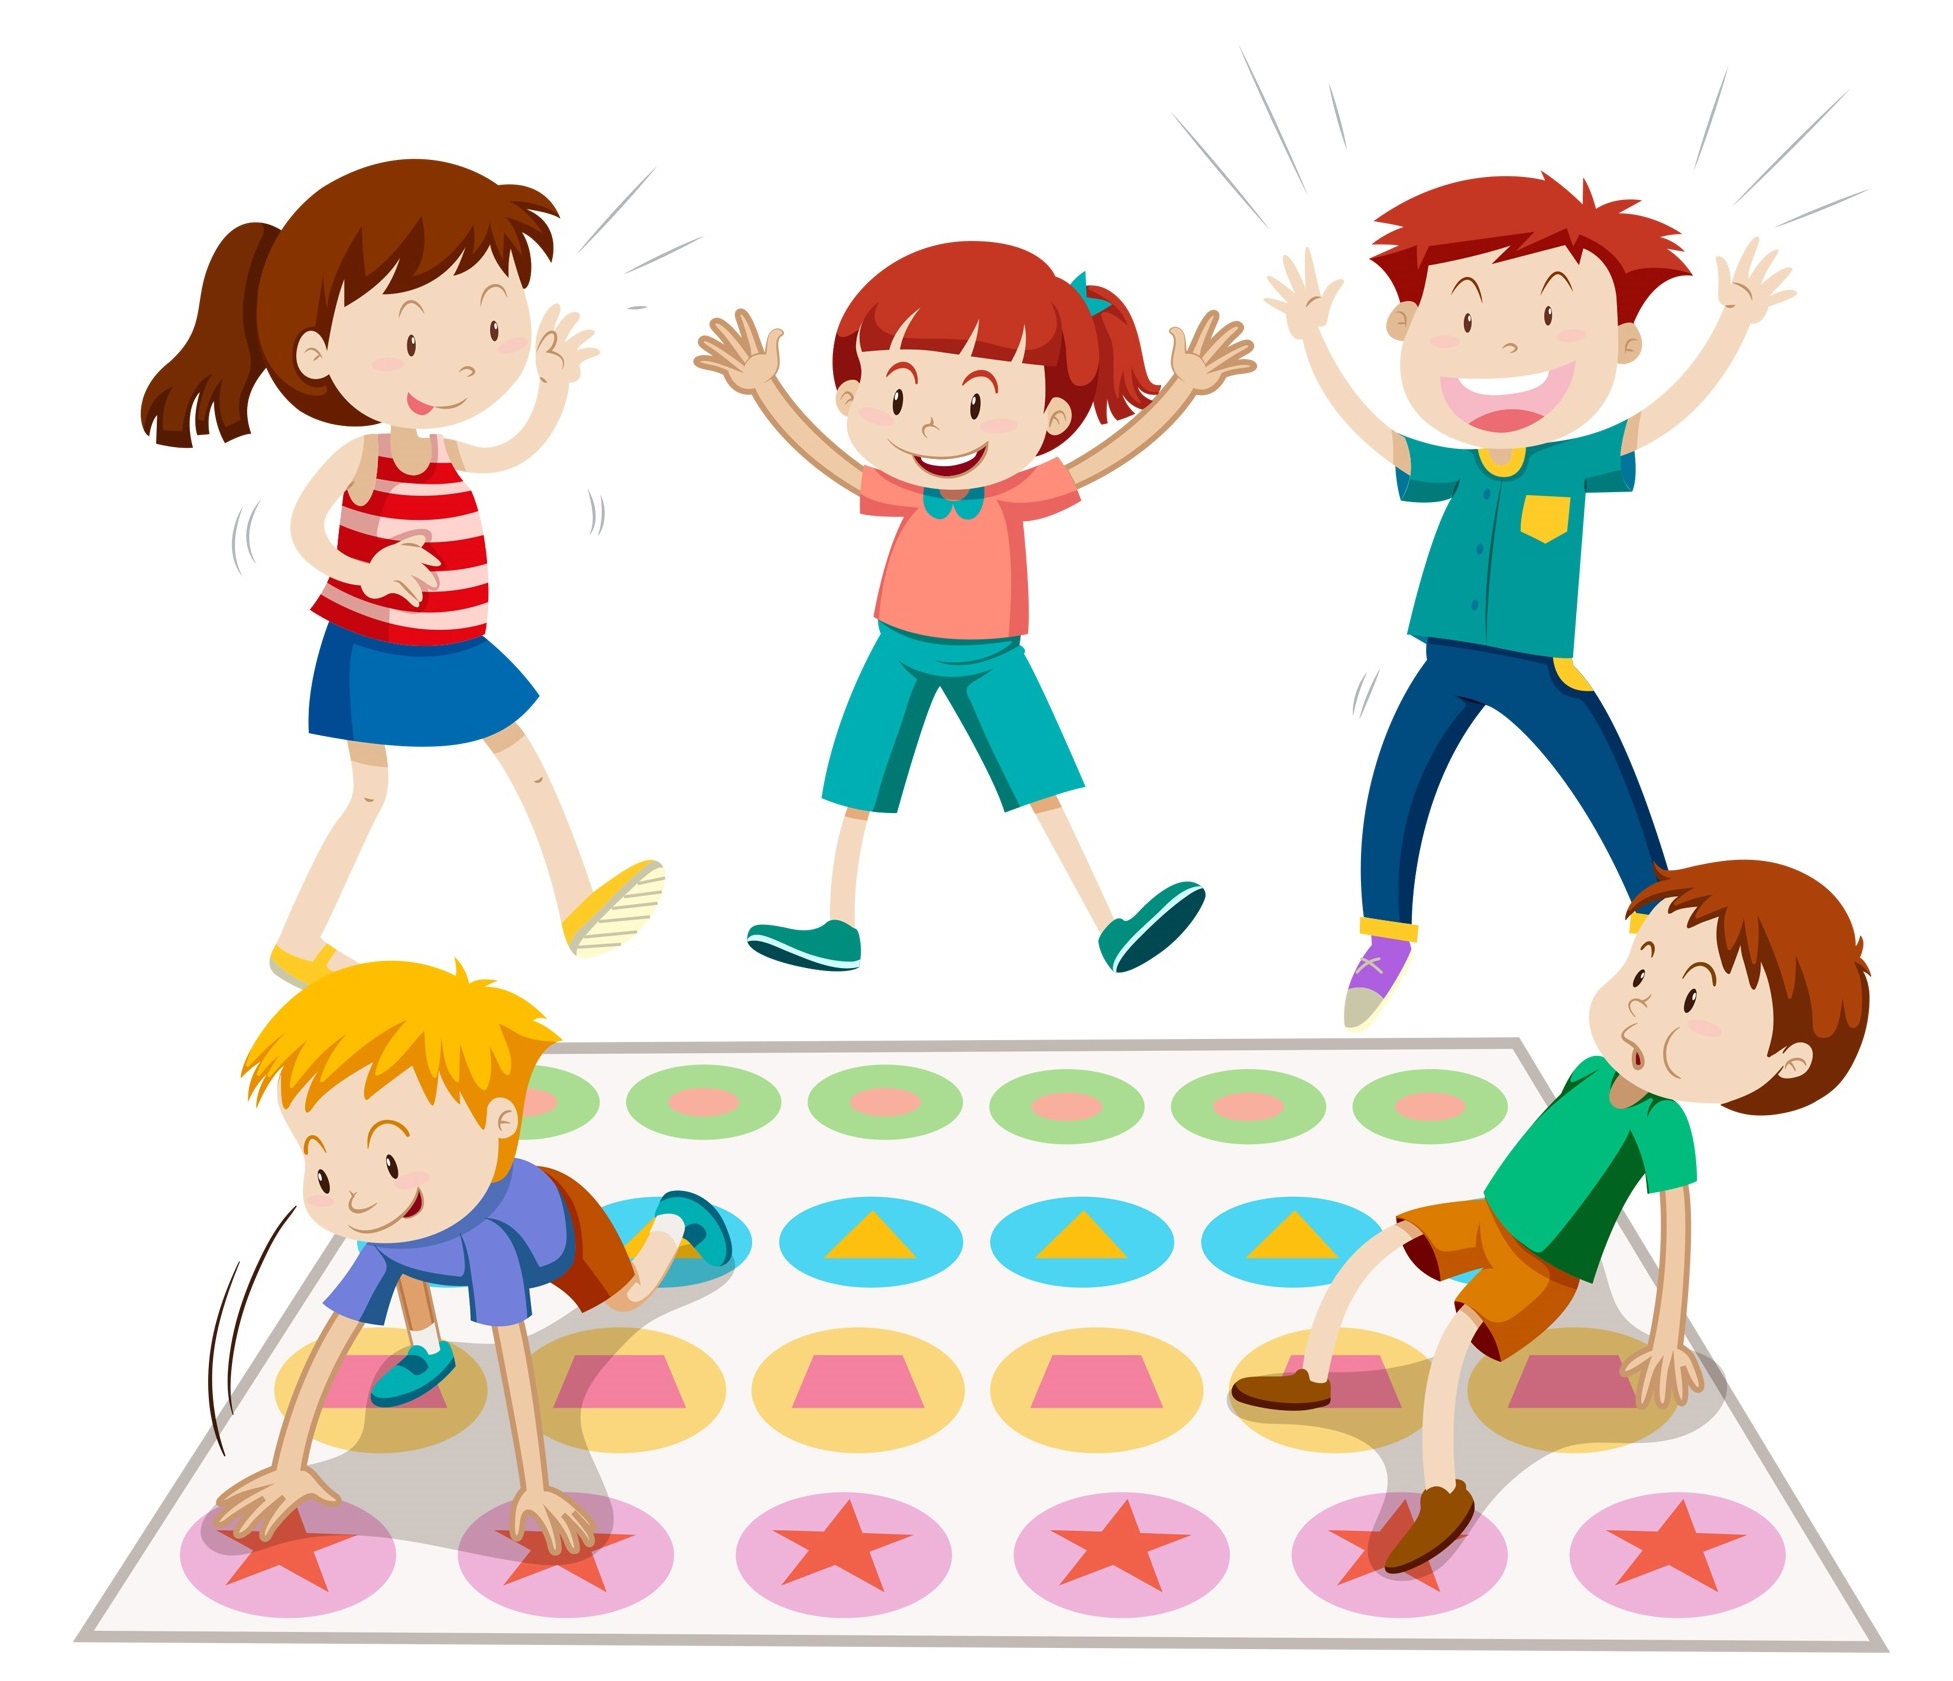 Иллюстрации играющих детей